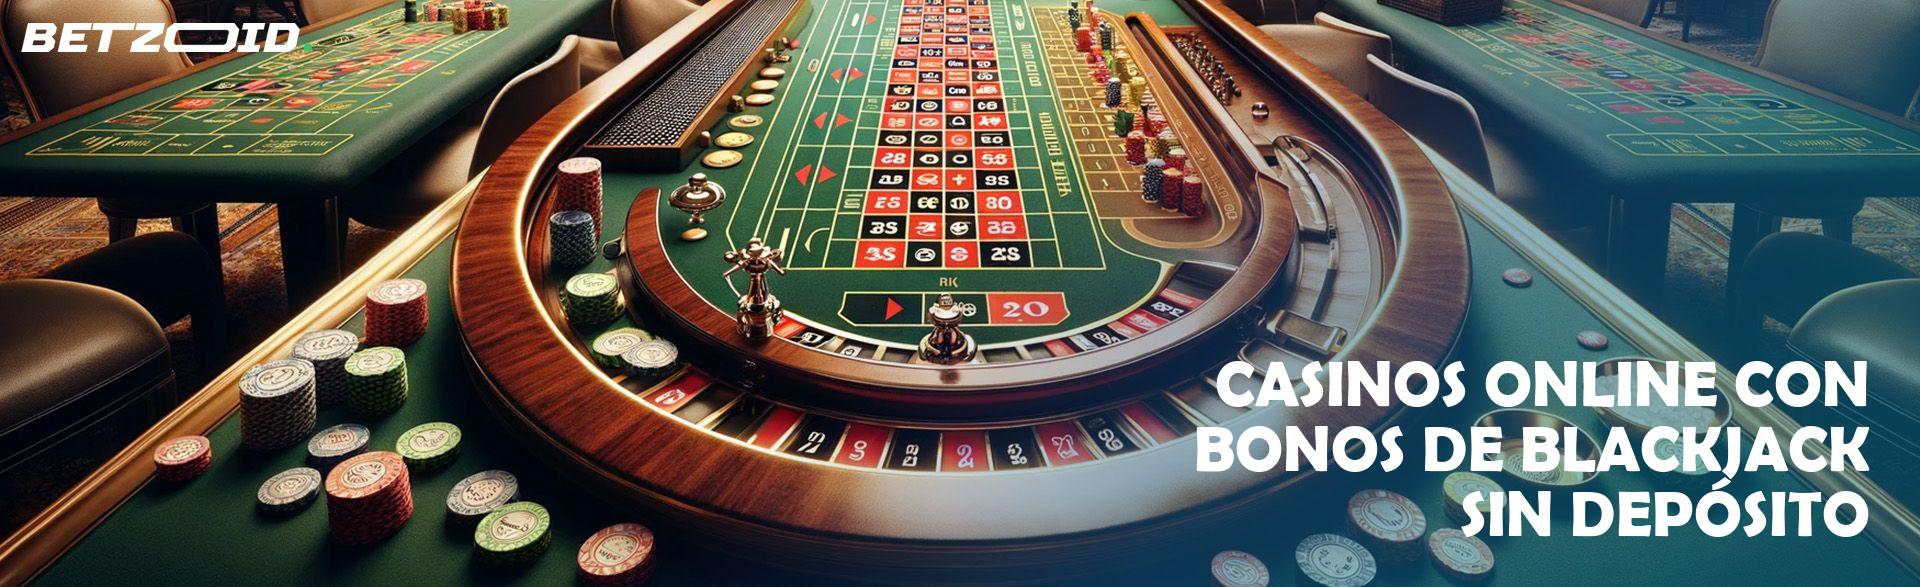 Casinos Online con Bonos de Blackjack sin Depósito.